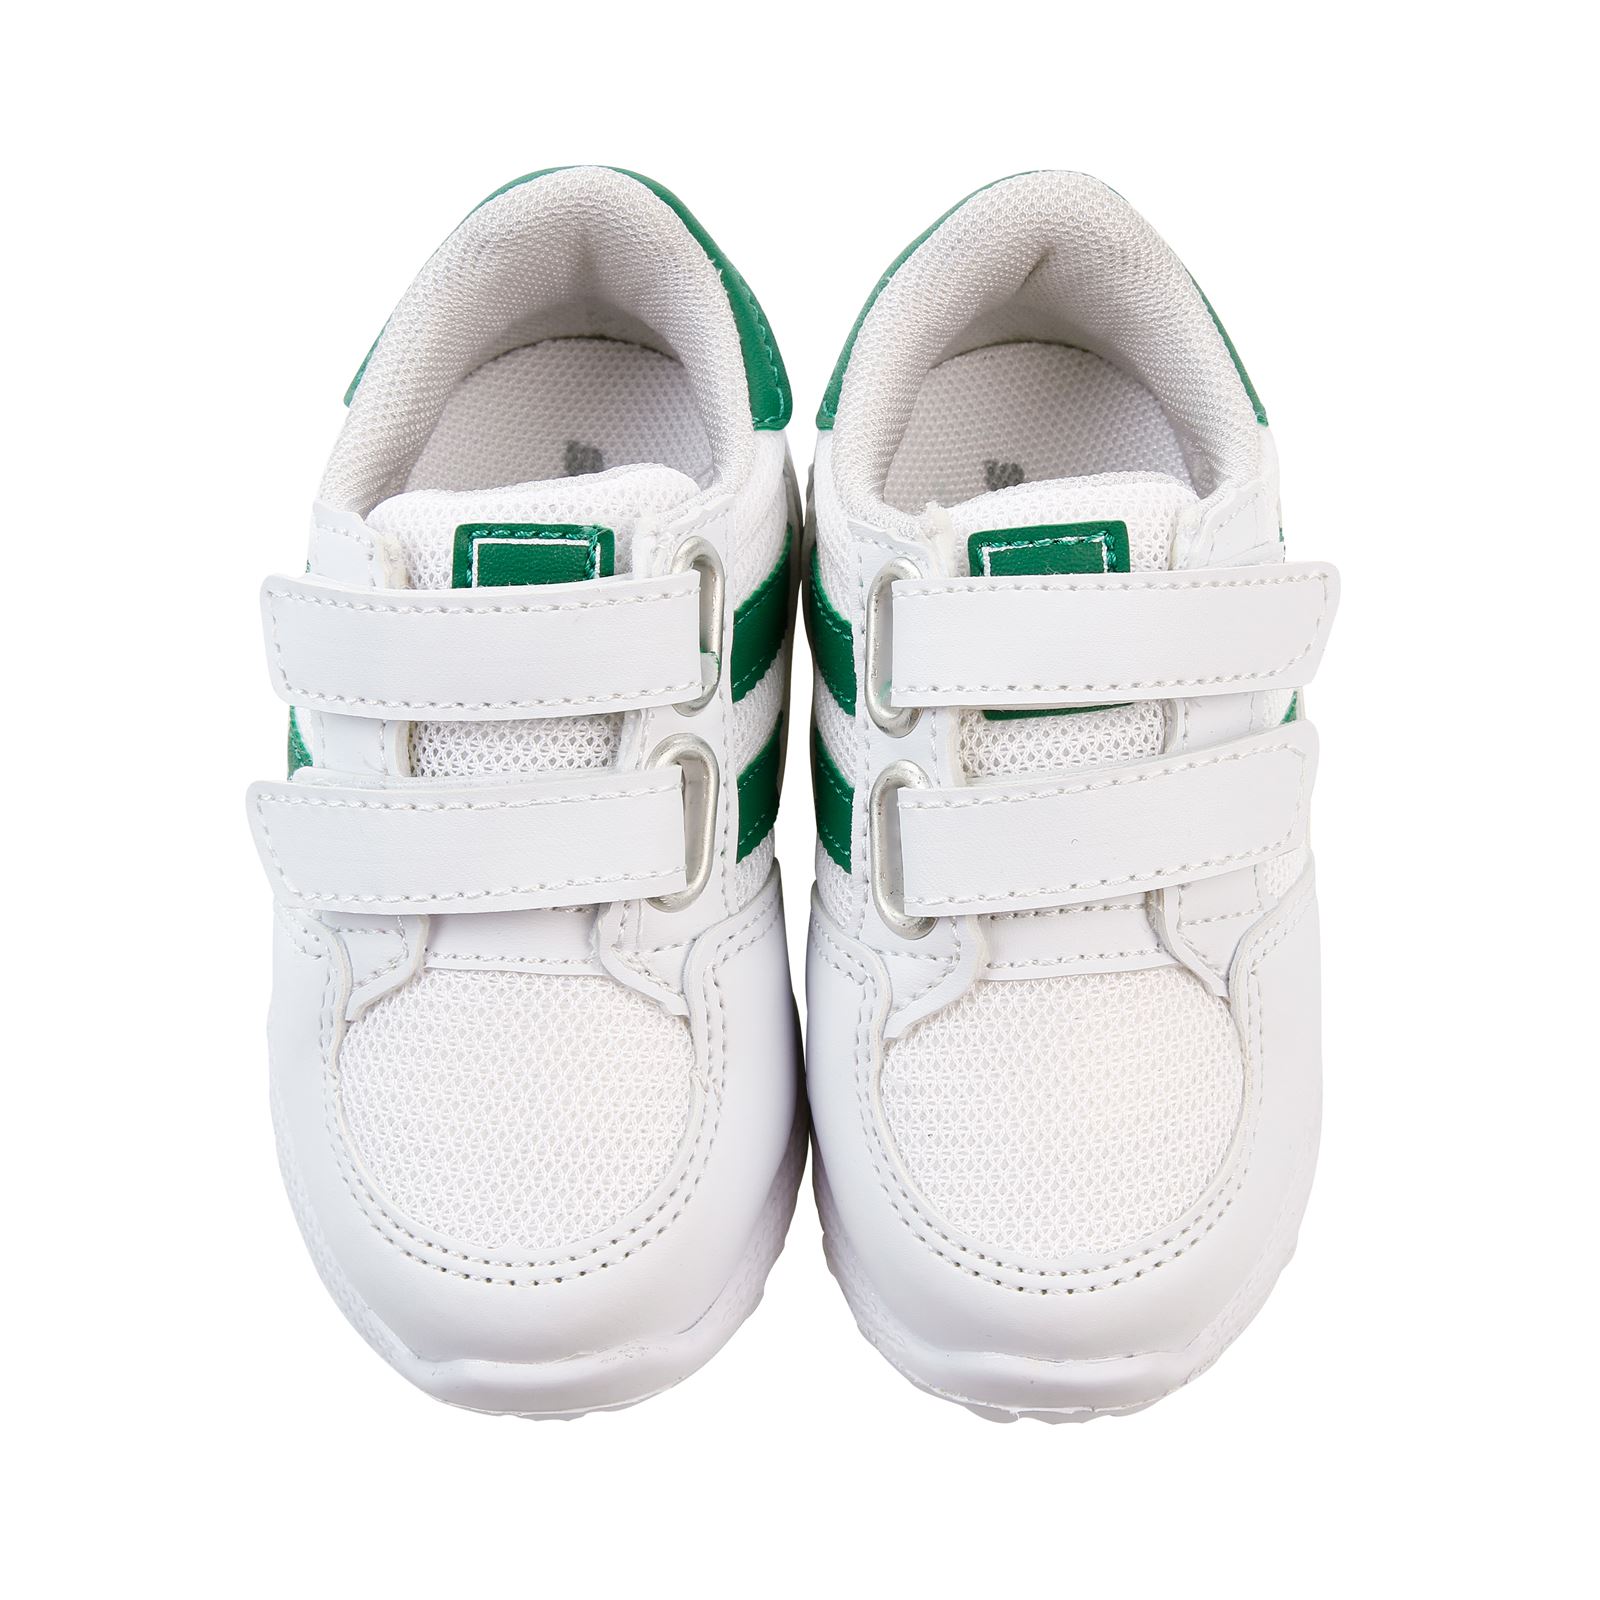 Sport Erkek Çocuk Spor Ayakkabı 21-25 Numara Beyaz-Yeşil